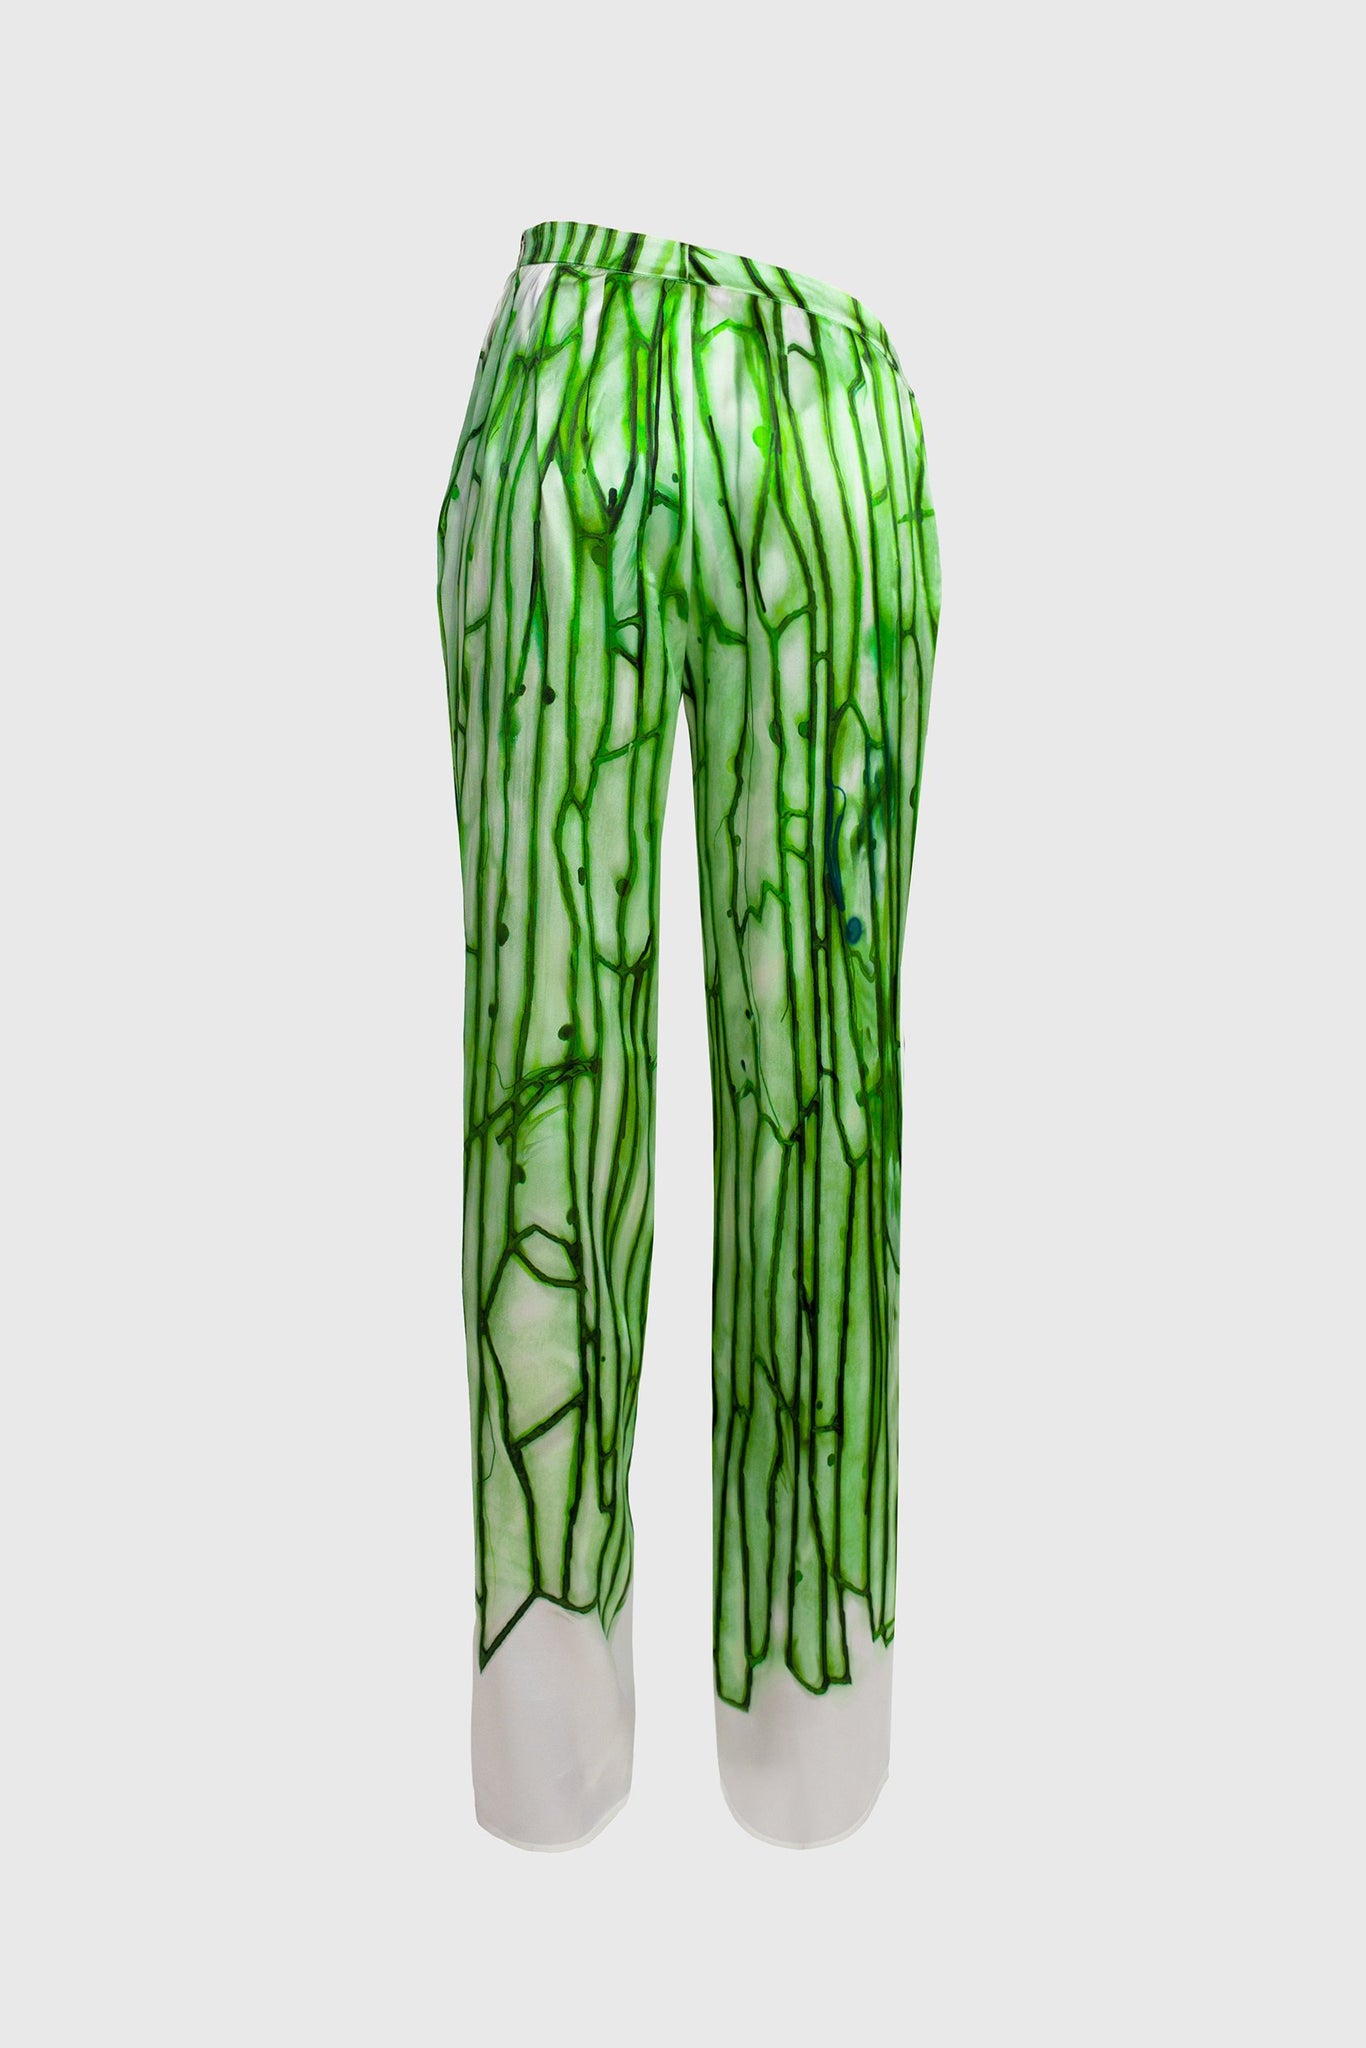 Amoeba Green Silk 'V' Cut Trousers